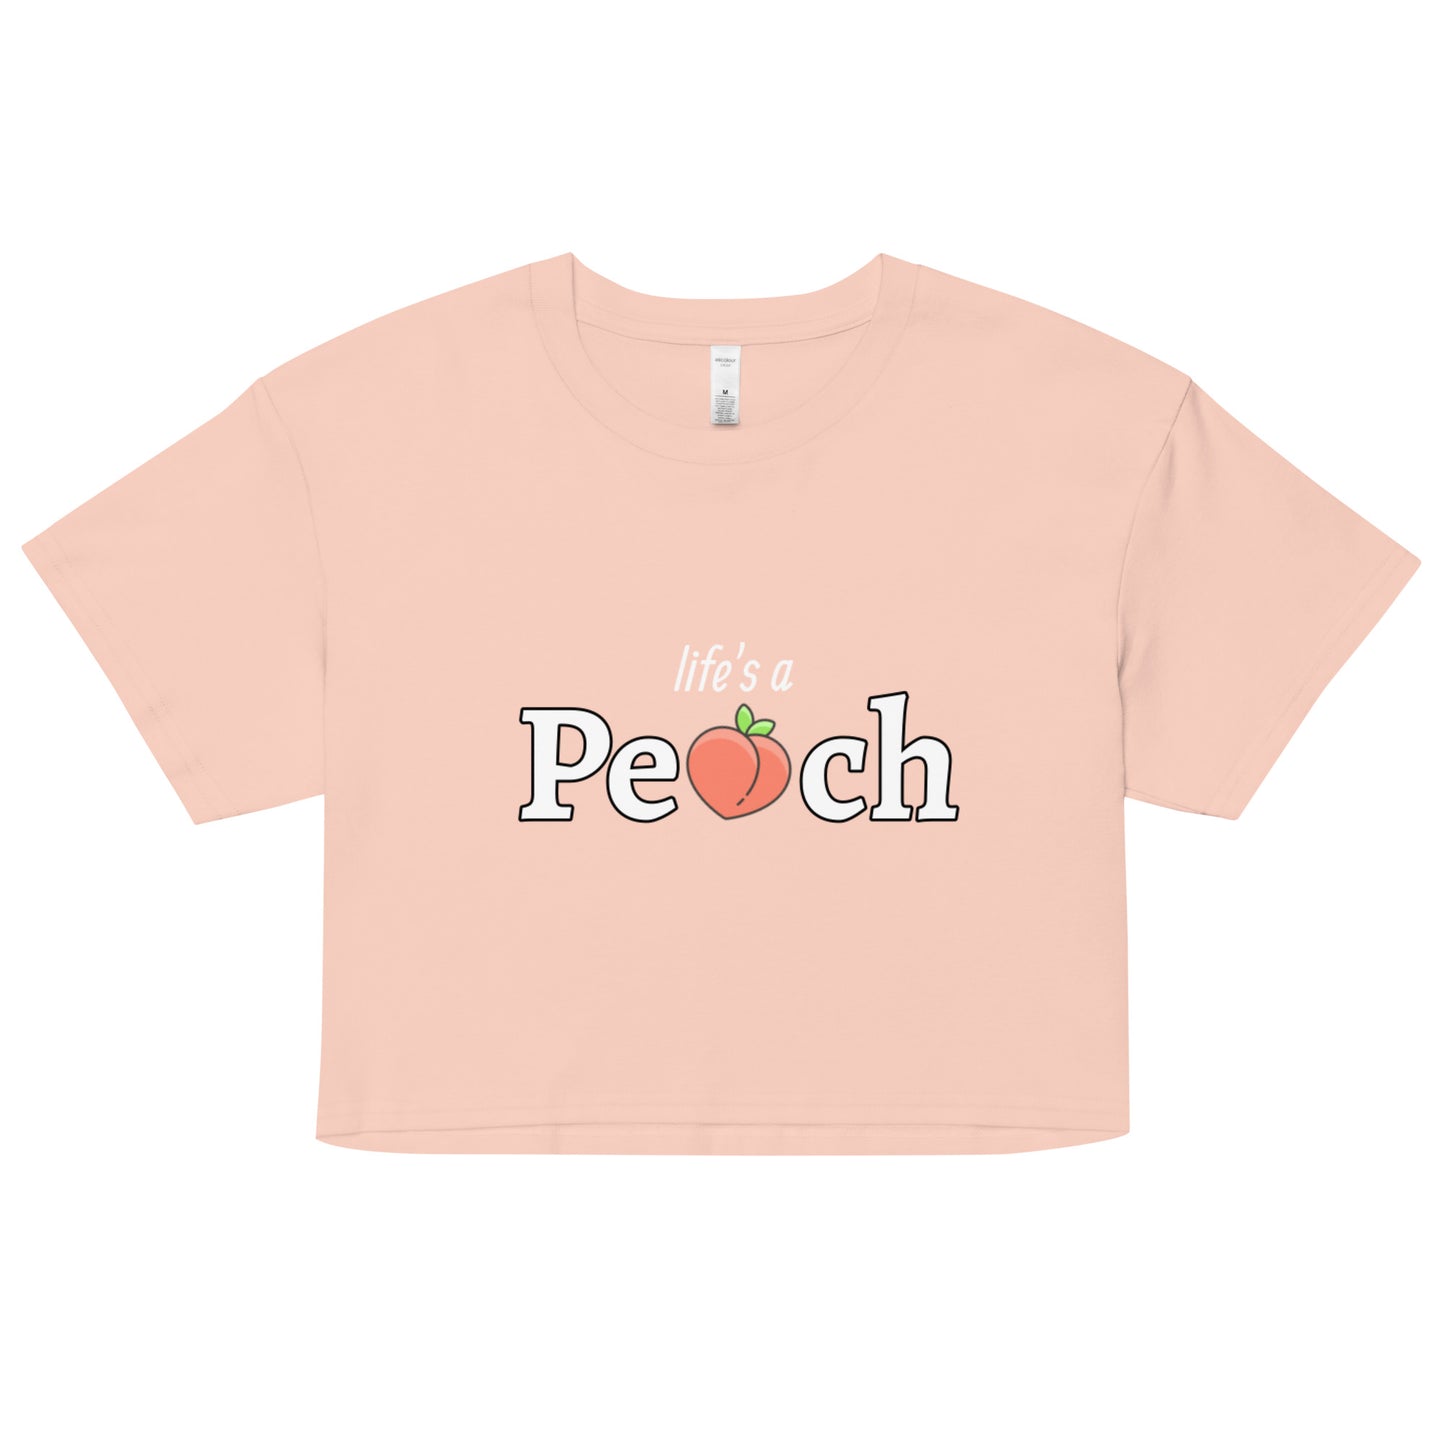 Life's a Peach Women’s crop top